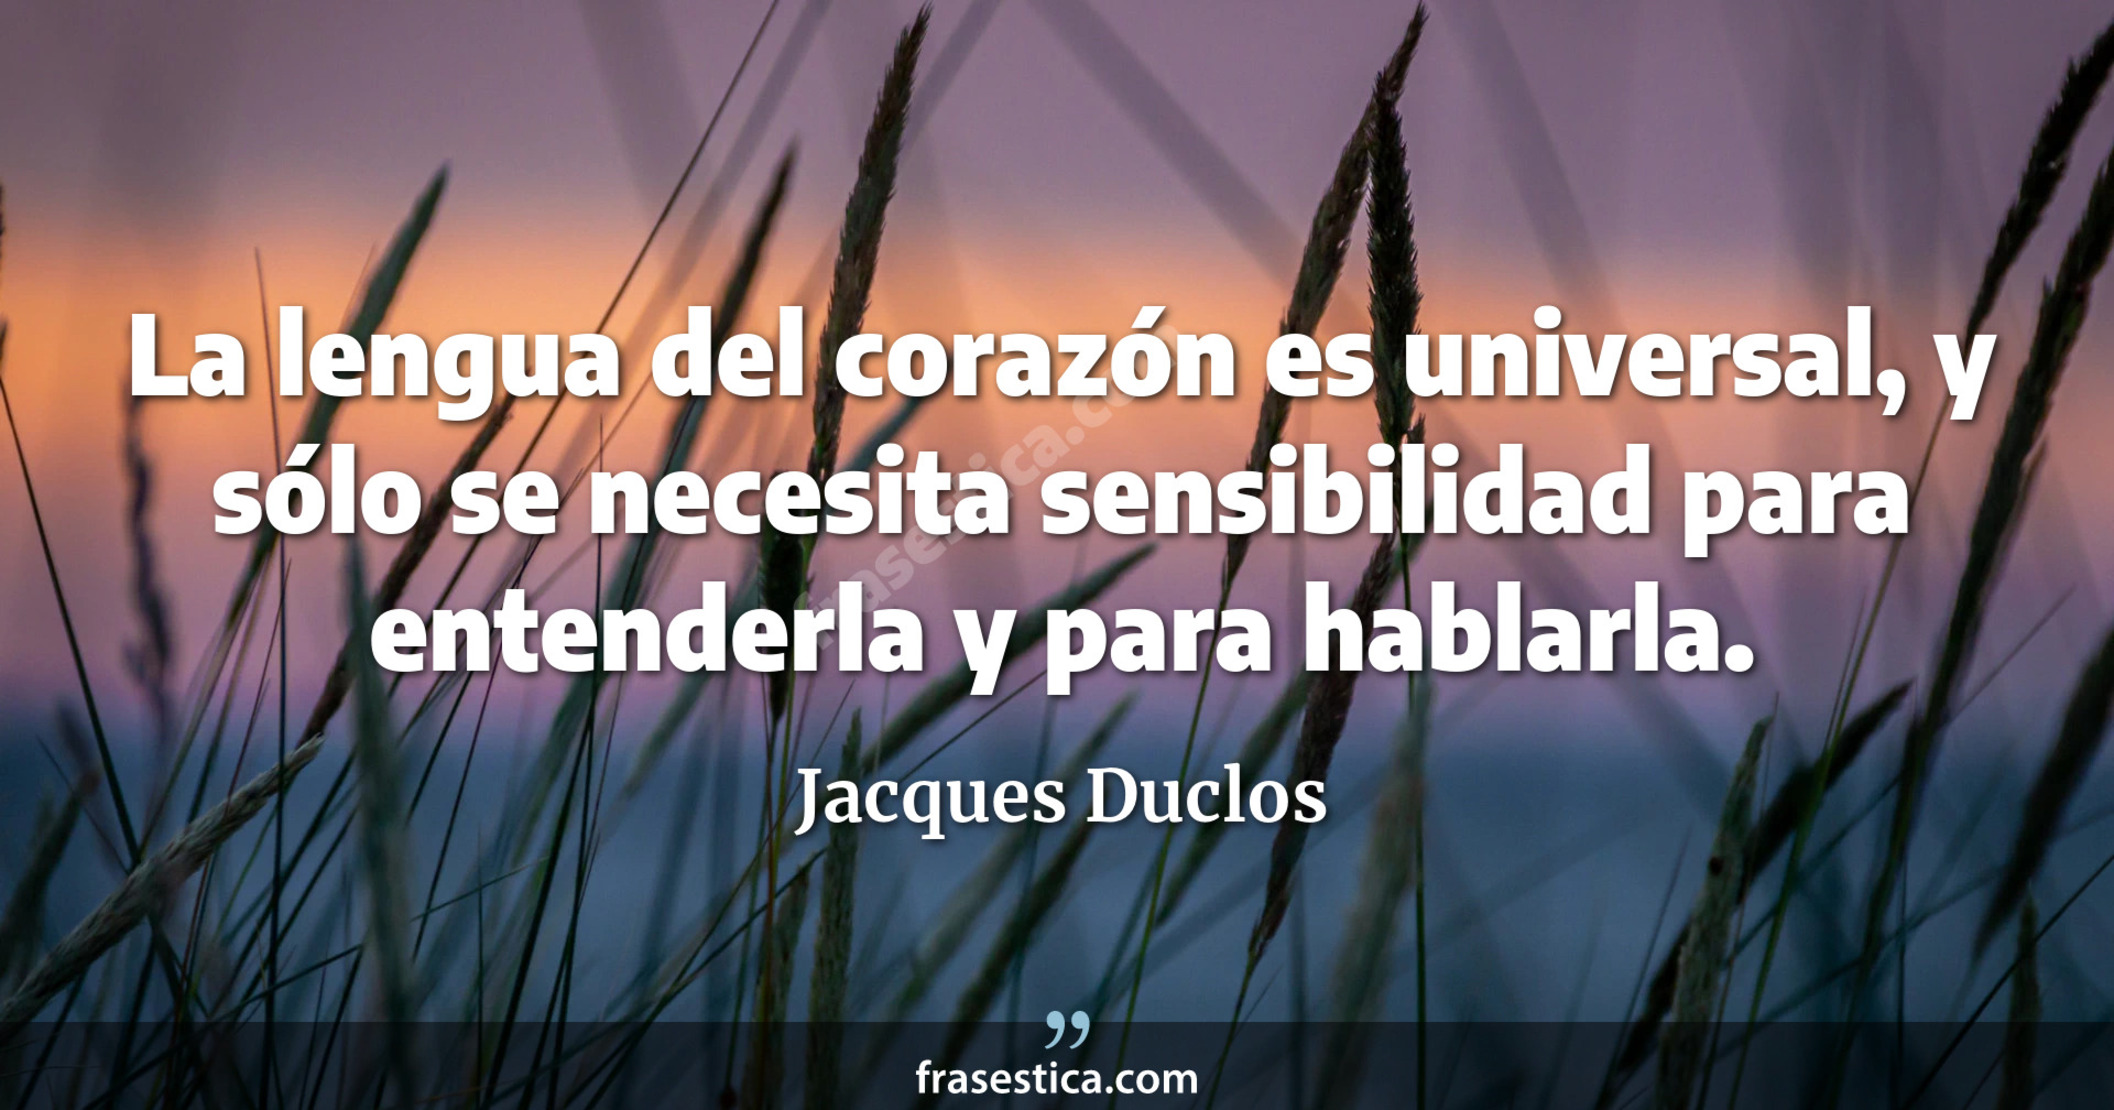 La lengua del corazón es universal, y sólo se necesita sensibilidad para entenderla y para hablarla. - Jacques Duclos